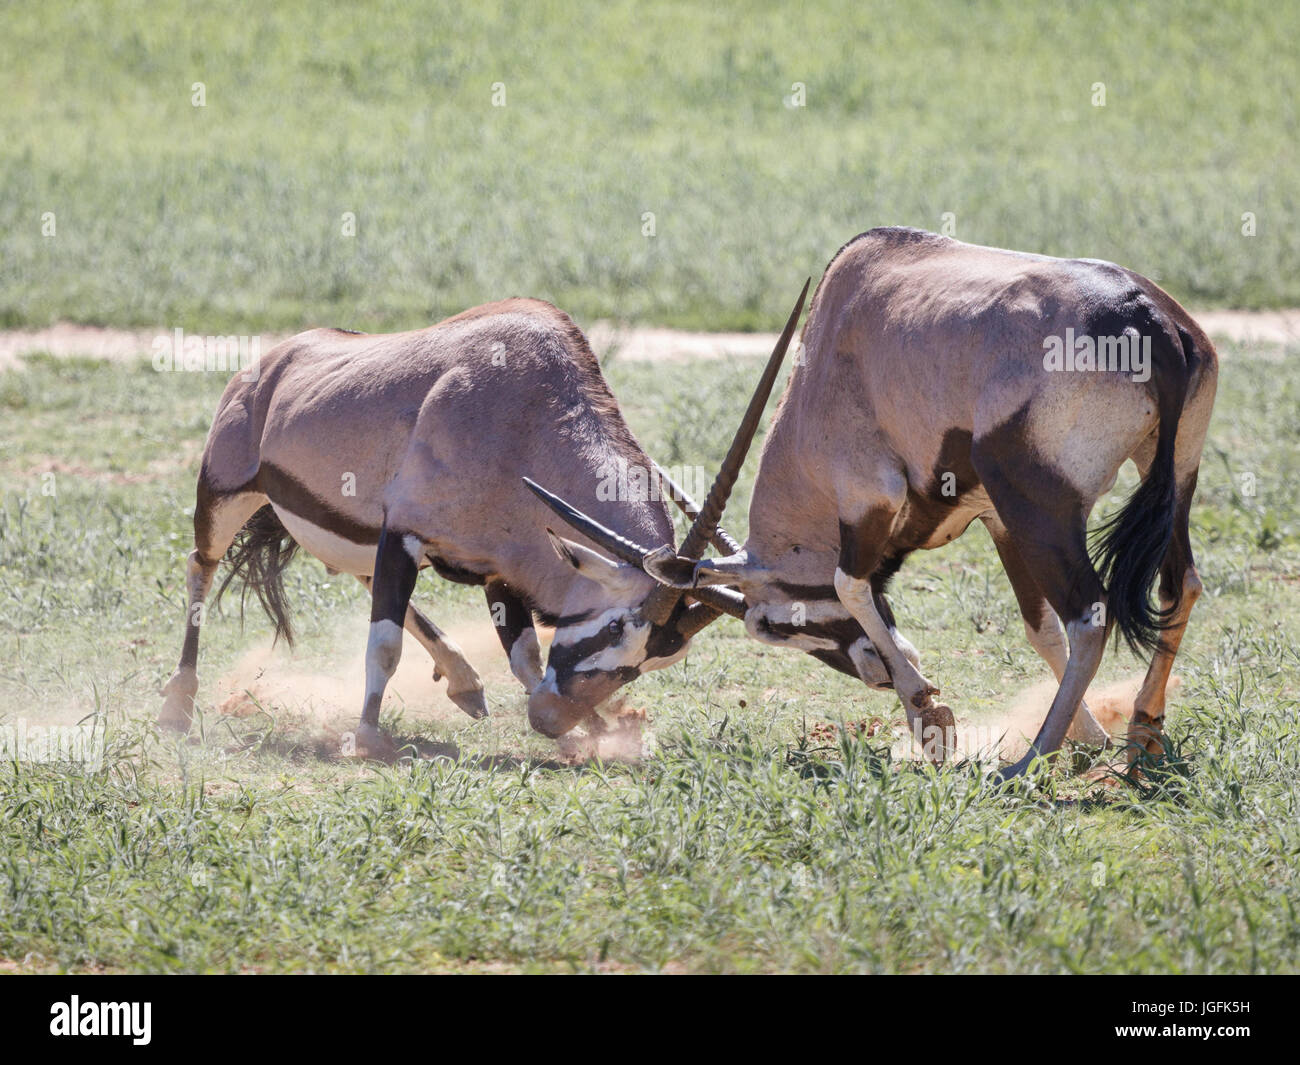 Oryx gazella, gemsbok maschi di lotta per il predominio territoriale che spesso termina con la morte di uno. Maschio territoriale farà guadagnare i diritti di riproduzione per le femmine. Foto Stock